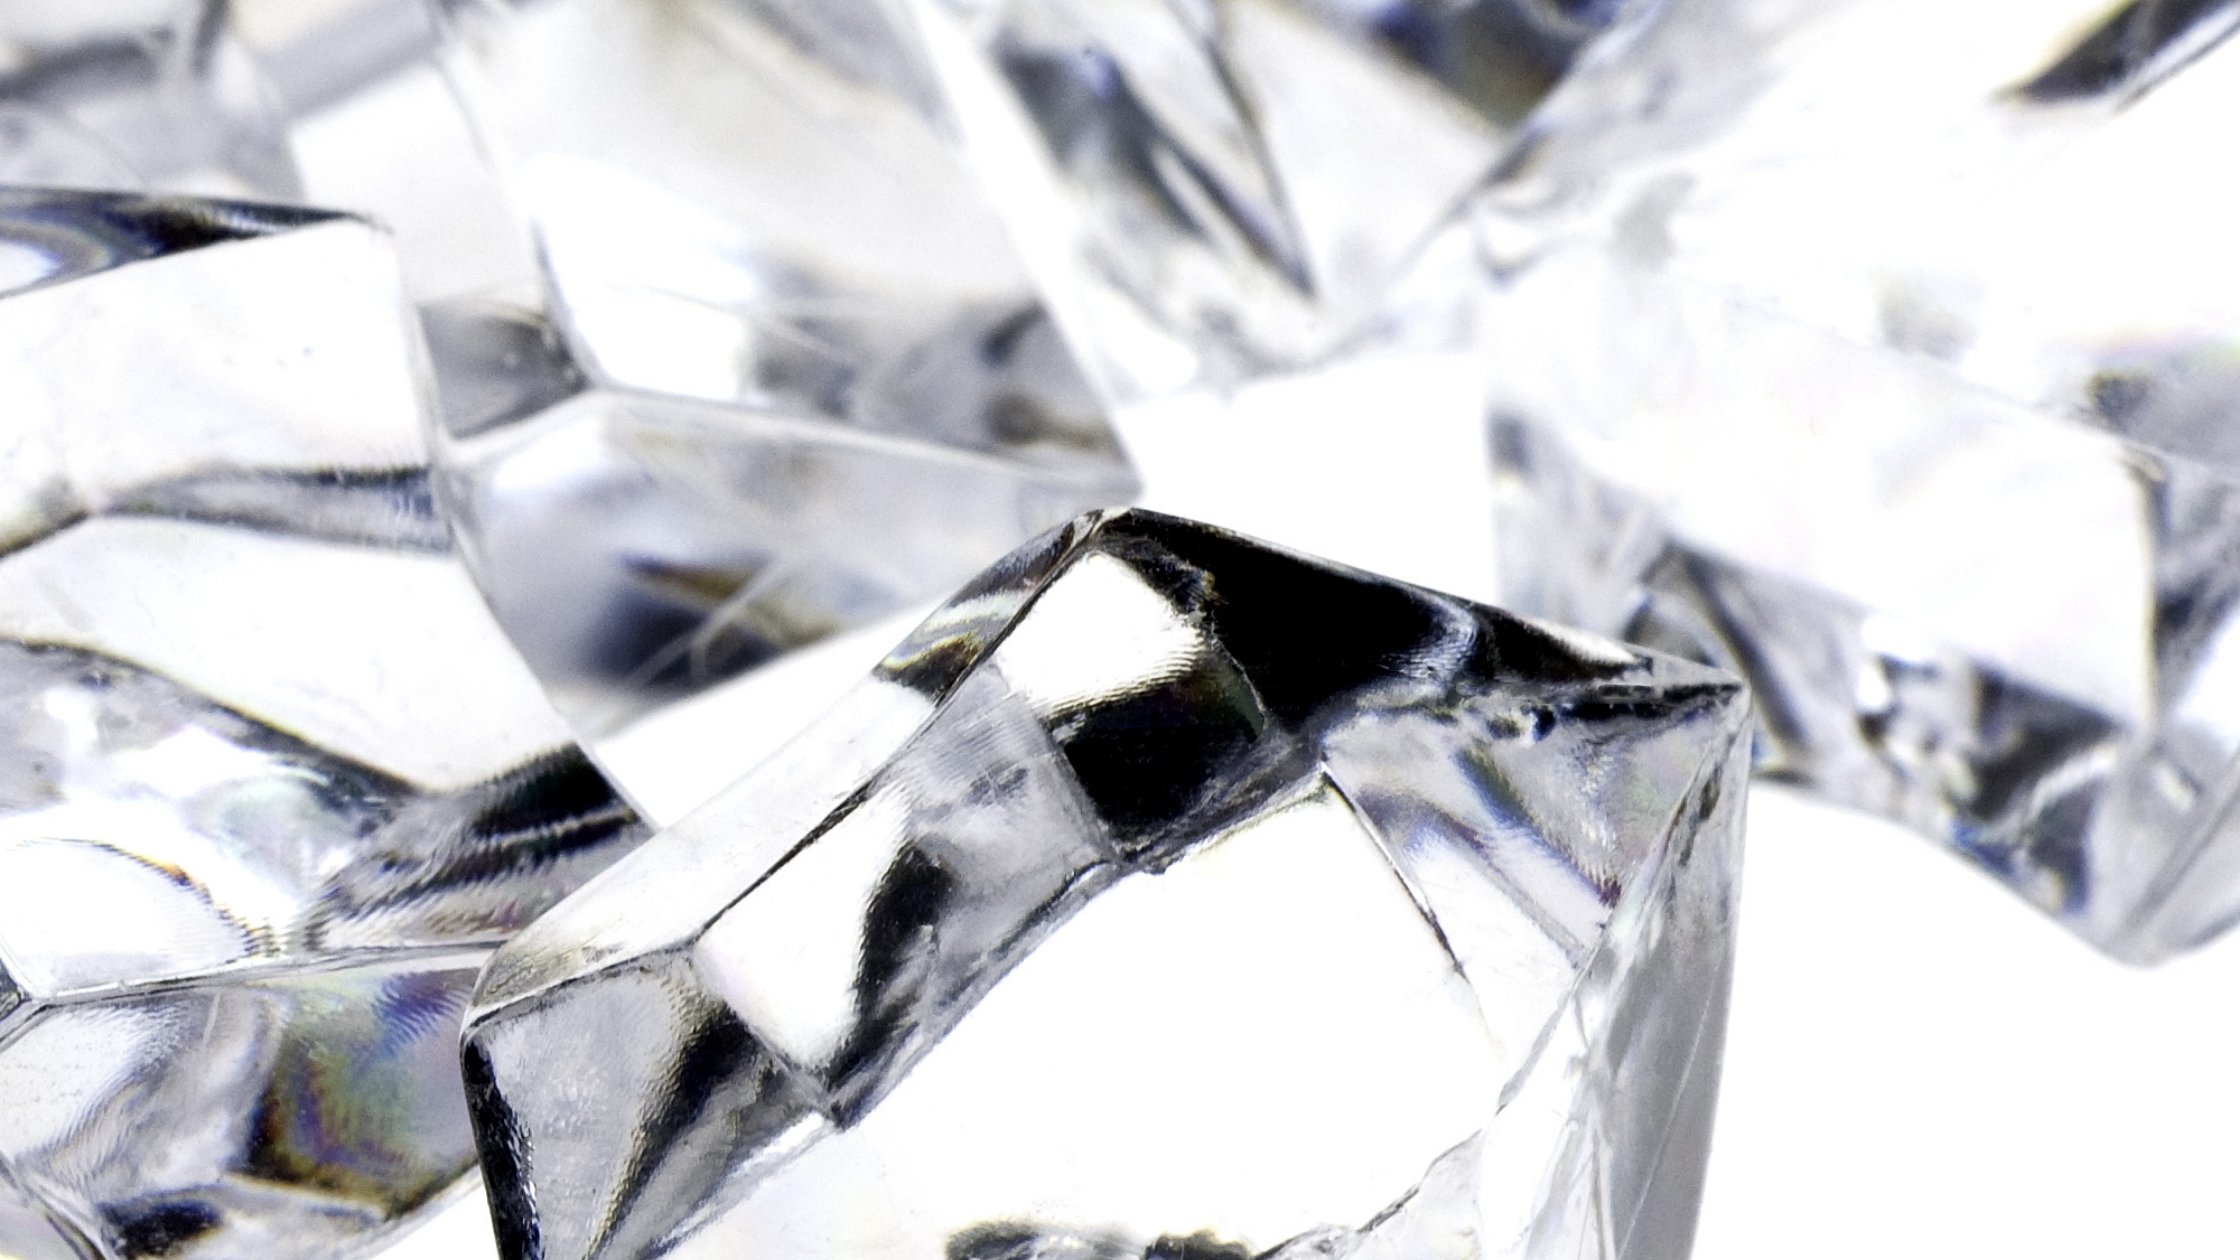 How To Identify A Raw Diamond - Astteria